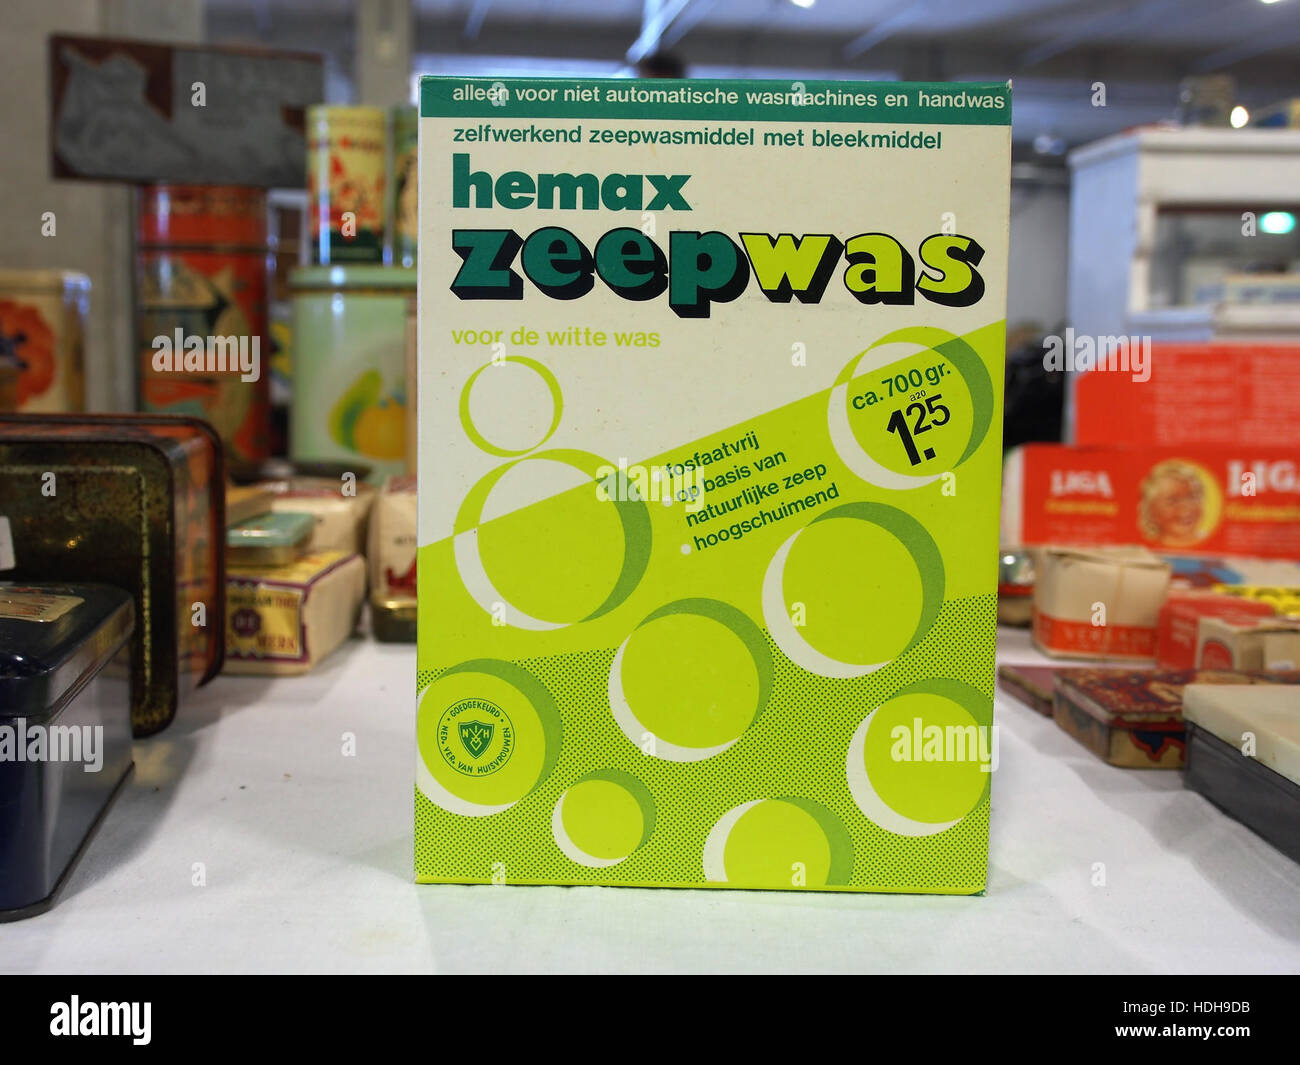 Hemax Zeepwas pic1 Stock Photo